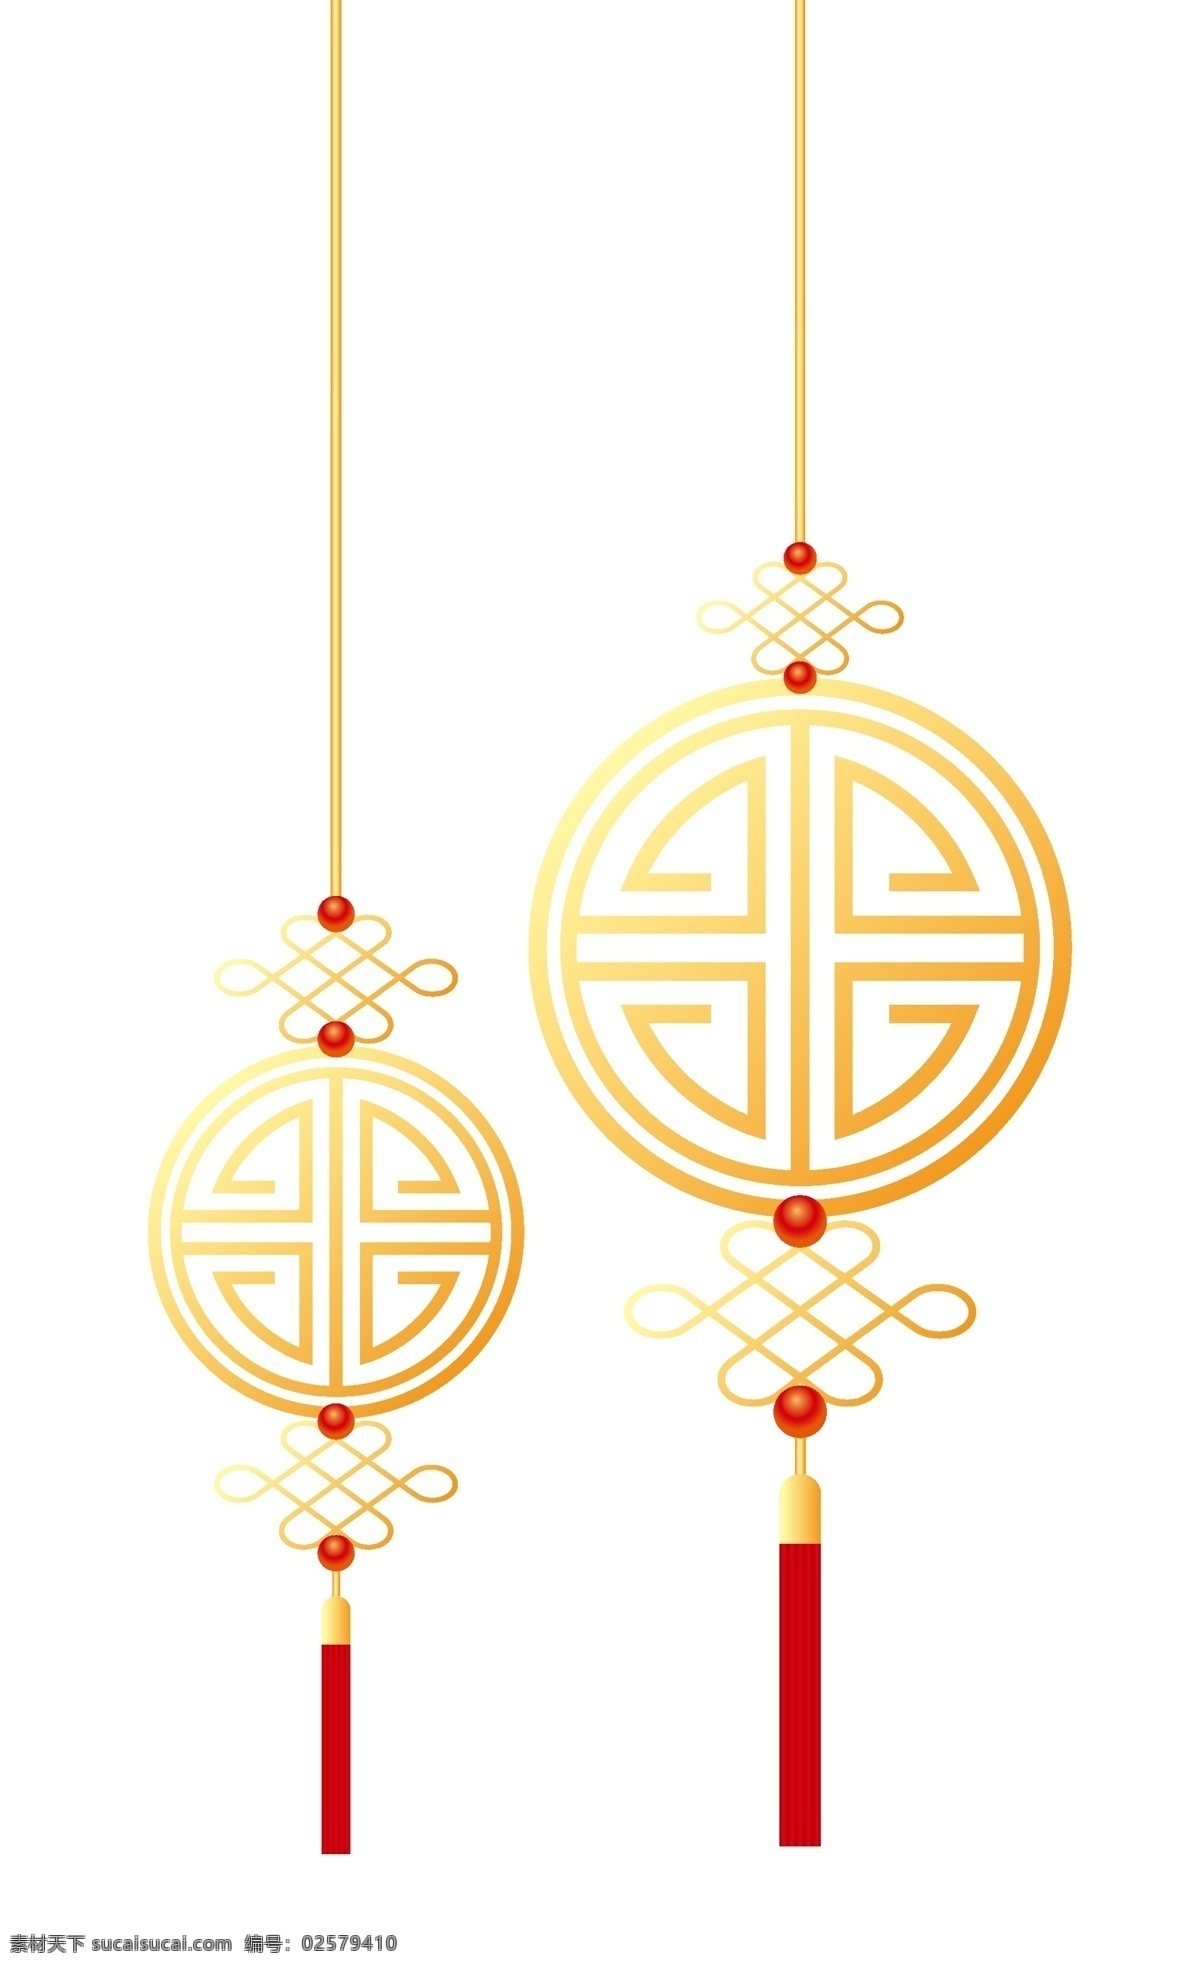 中国结图片 中国结 节日庆典 传统花纹 新年祝福 寿 婚庆 文化艺术 节日庆祝